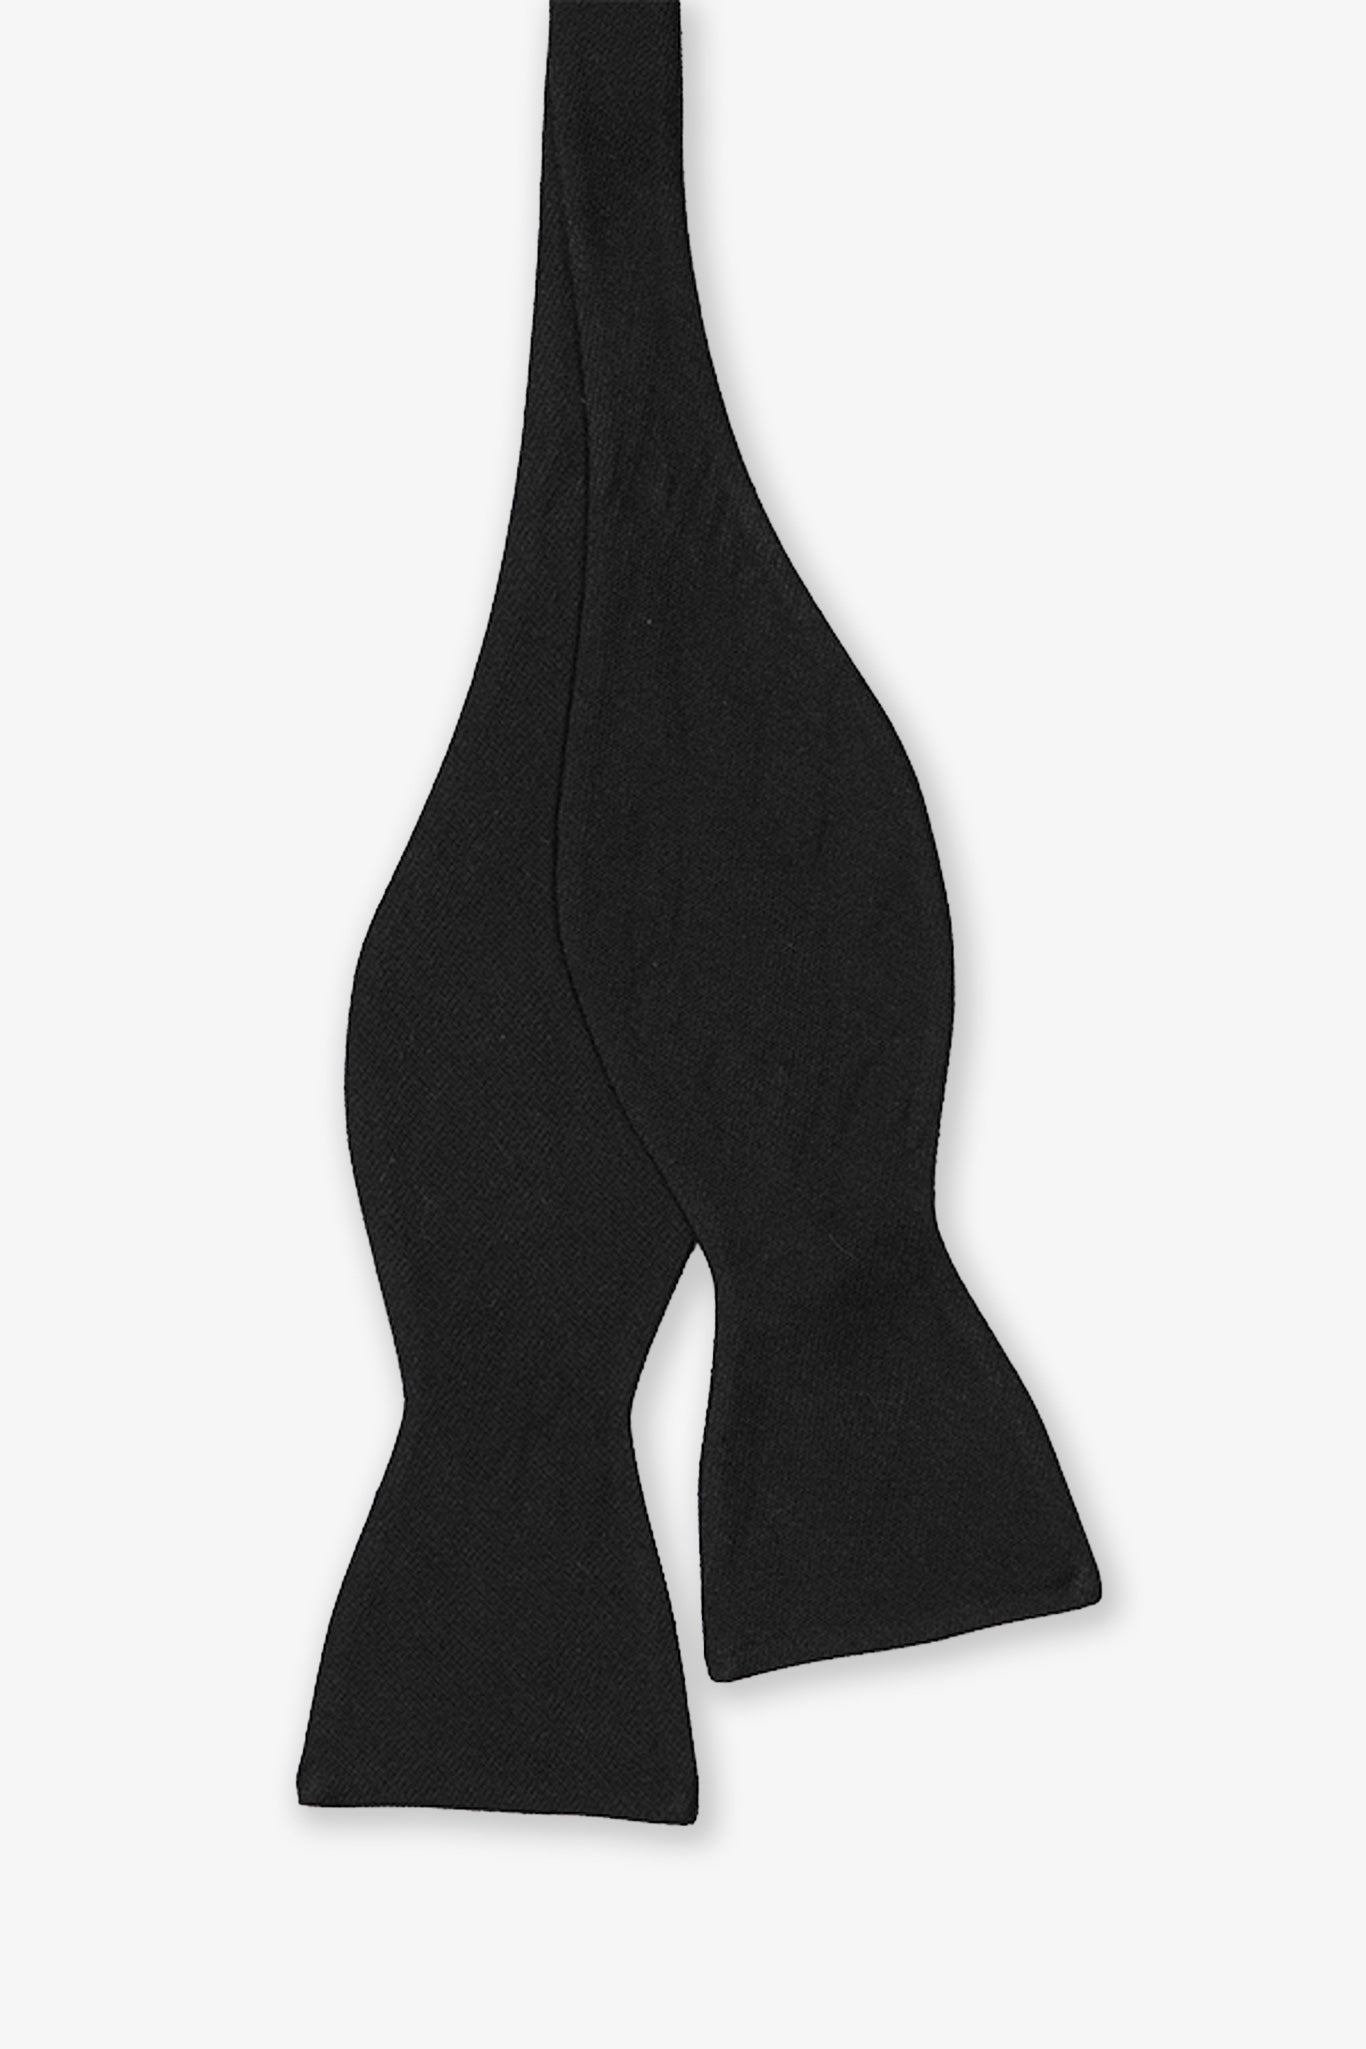 Daniel Black Bow Tie By Birdy Grey